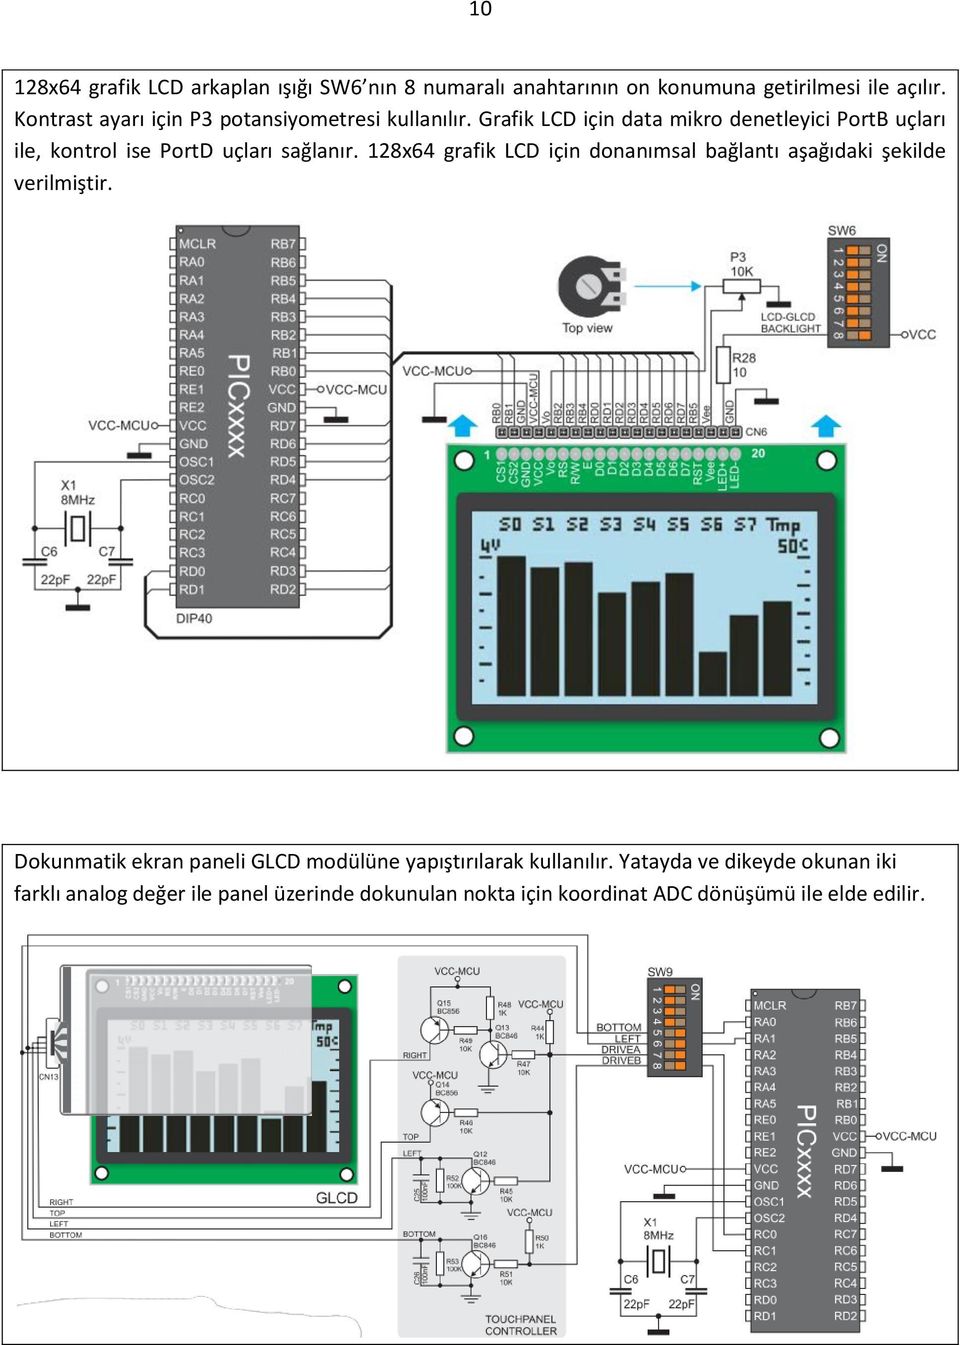 Grafik LCD için data mikro denetleyici PortB uçları ile, kontrol ise PortD uçları sağlanır.